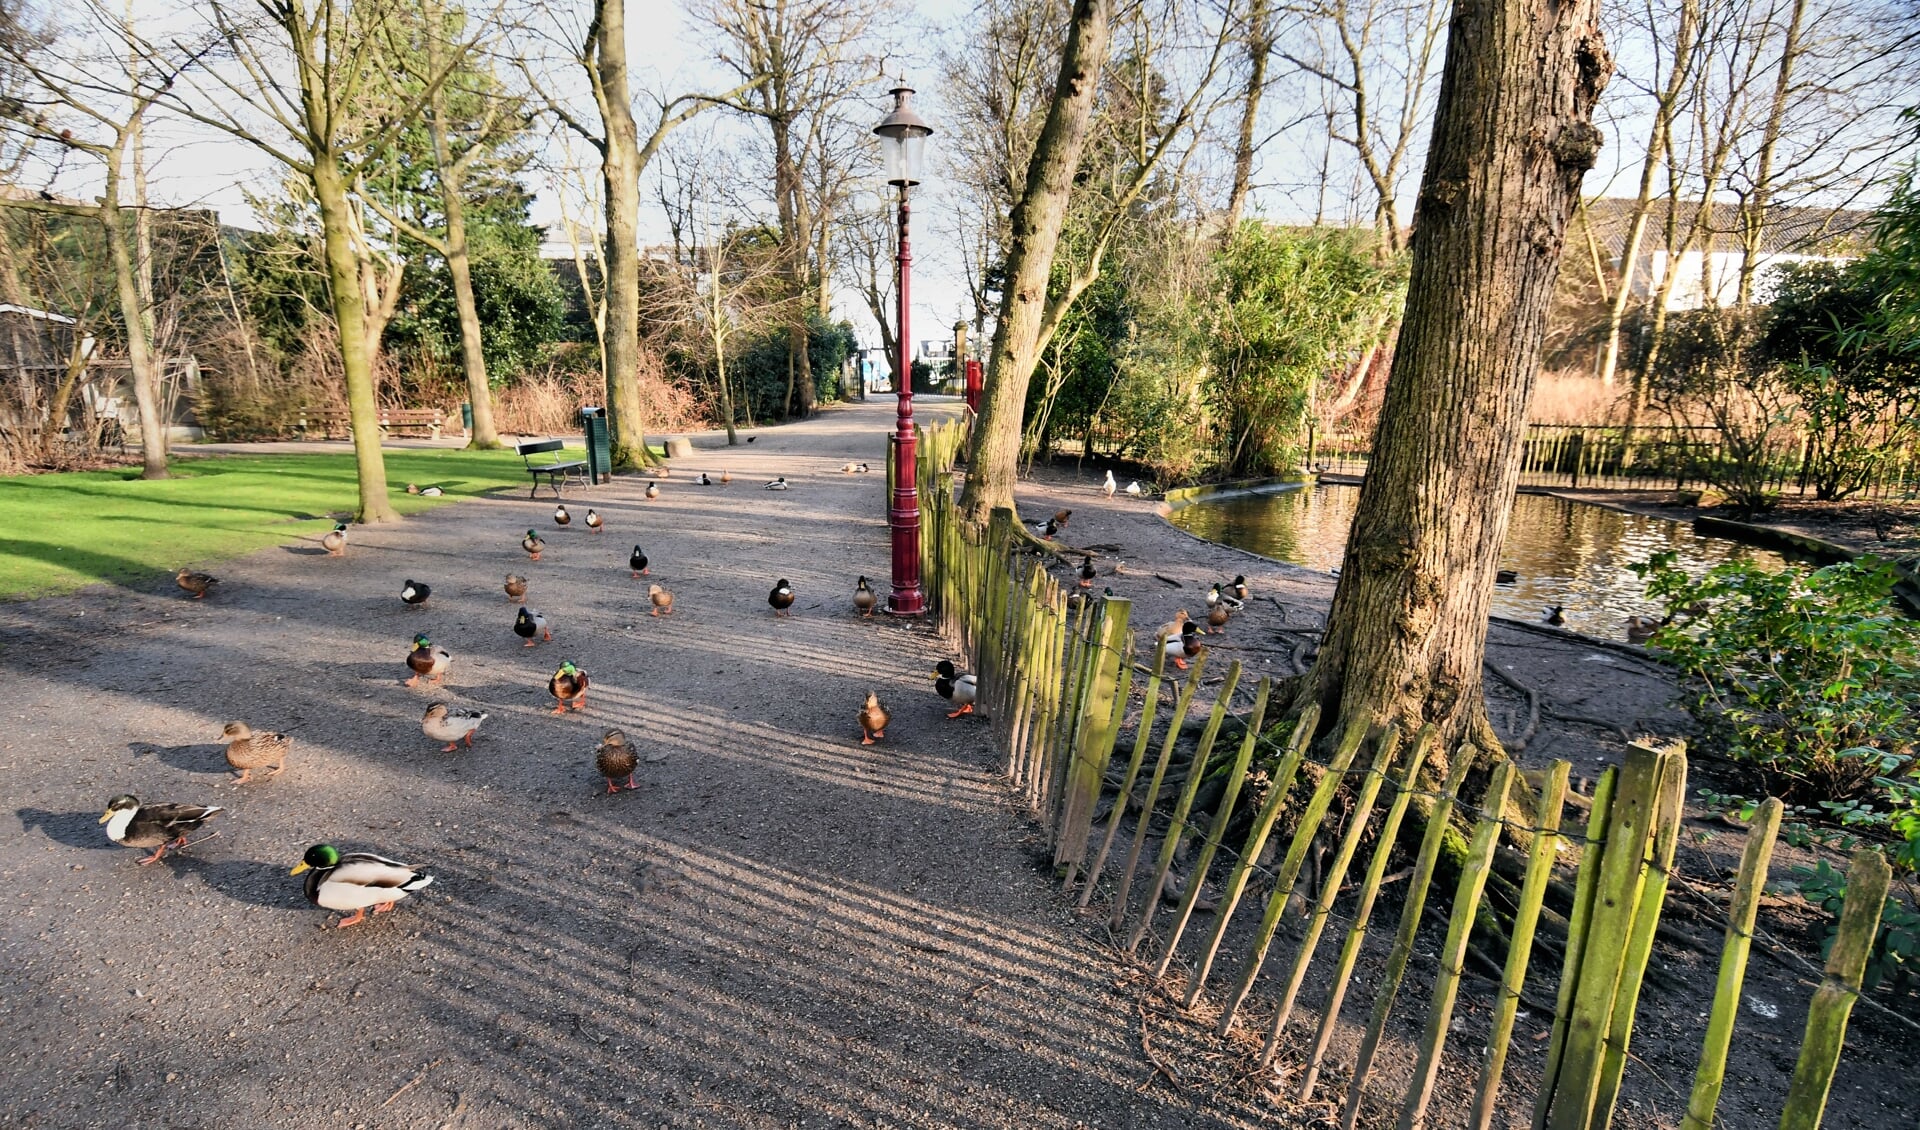 Het voortkabbelende lieve leventje van de eenden wordt even minder tijdens de Burendag. Het Wilhelminapark is de centrale locatie met diverse activiteiten. 